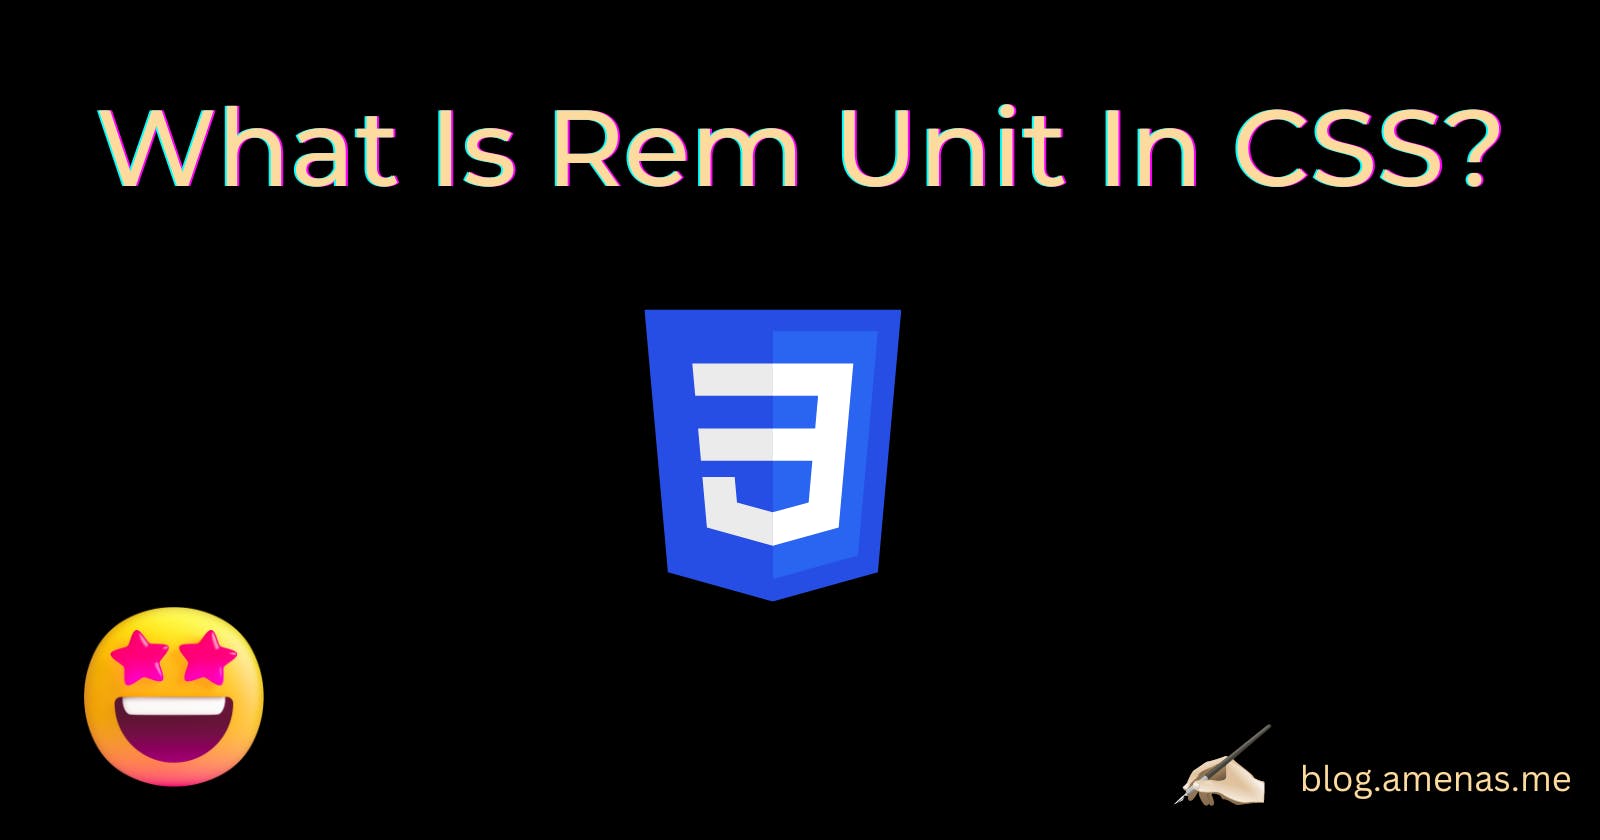 Rem Unit in 2 minutes!